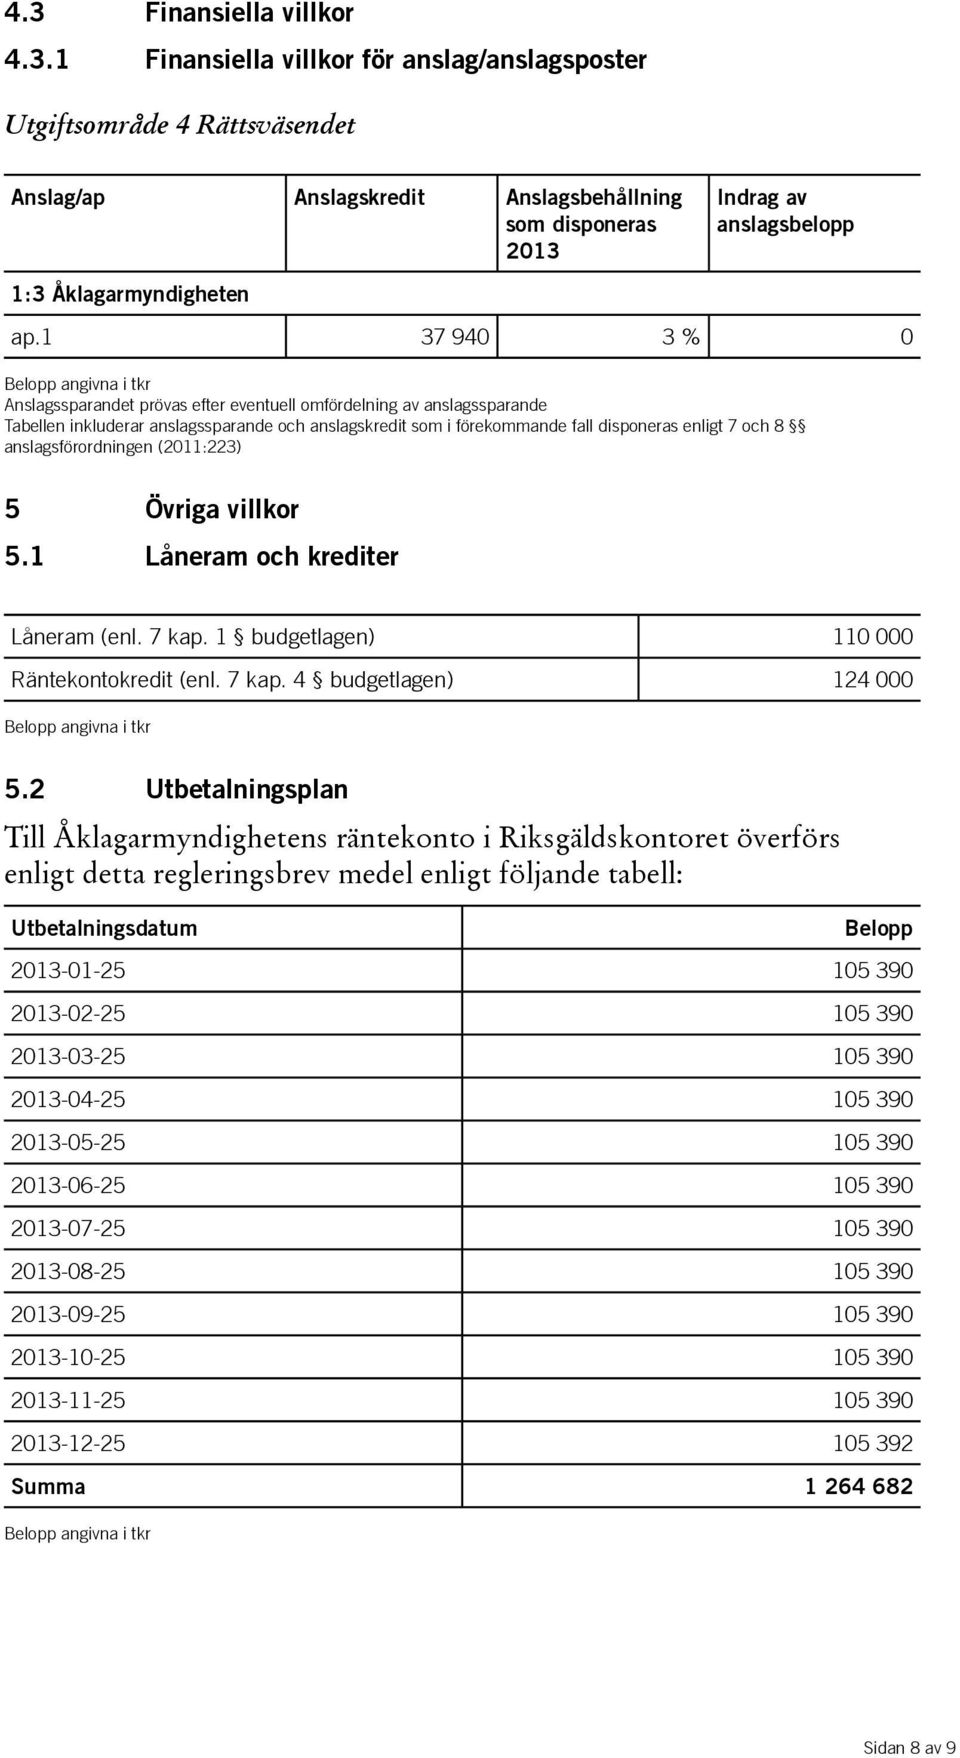 enligt 7 och 8 anslagsförordningen (2011:223) 5 Övriga villkor 5.1 Låneram och krediter Låneram (enl. 7 kap. 1 budgetlagen) 110 000 Räntekontokredit (enl. 7 kap. 4 budgetlagen) 124 000 Belopp angivna i tkr 5.